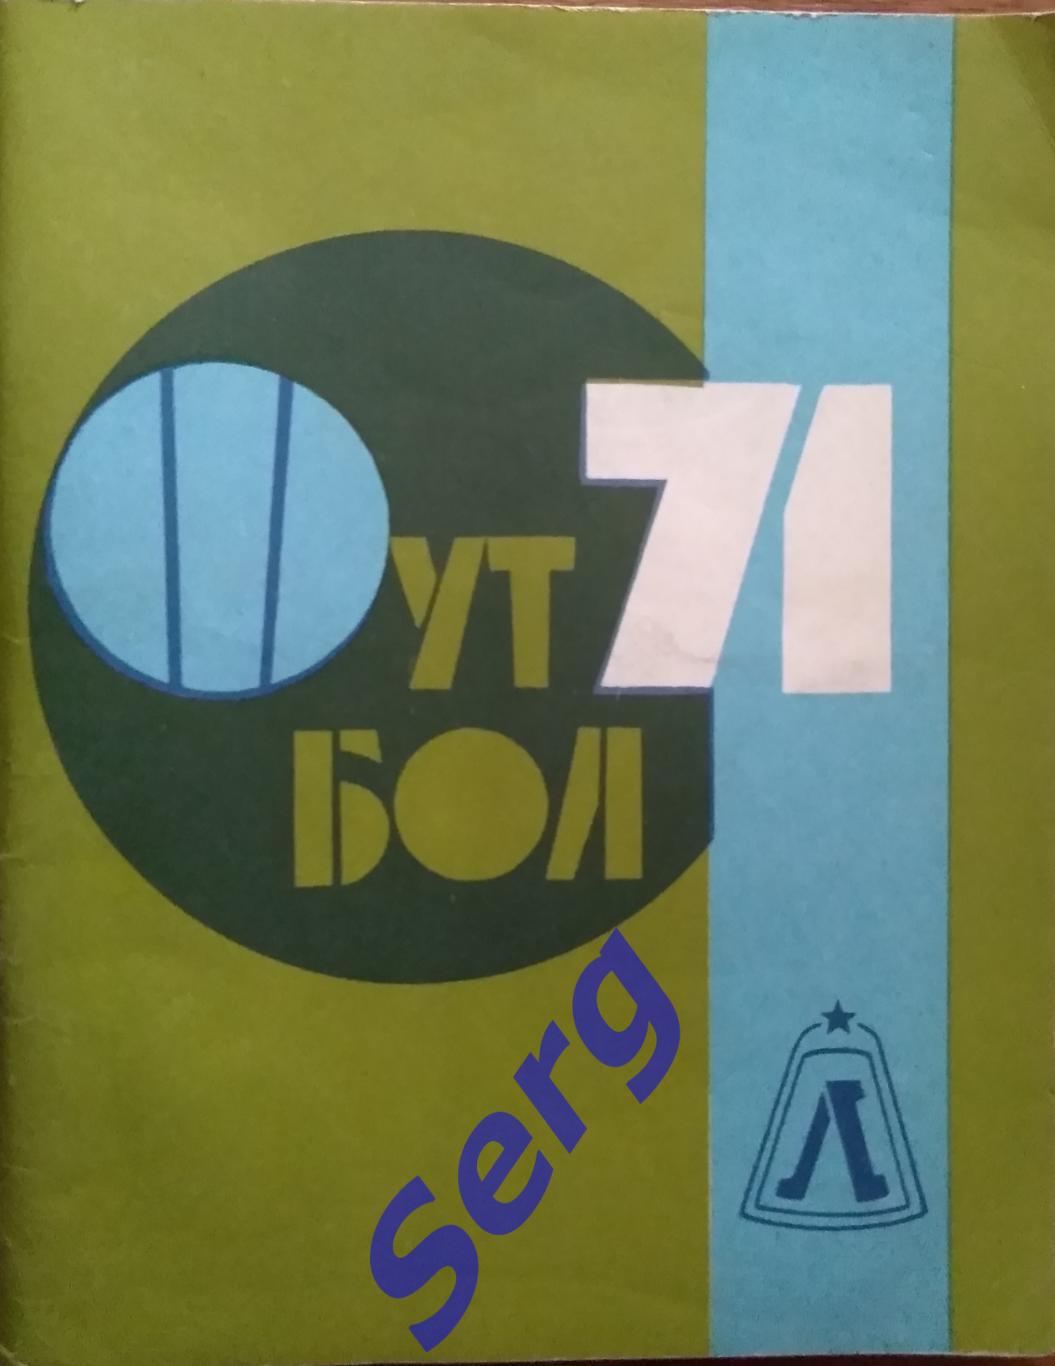 Календарь-справочник Ленинград - 1971 изд. Лениздат г. Ленинград